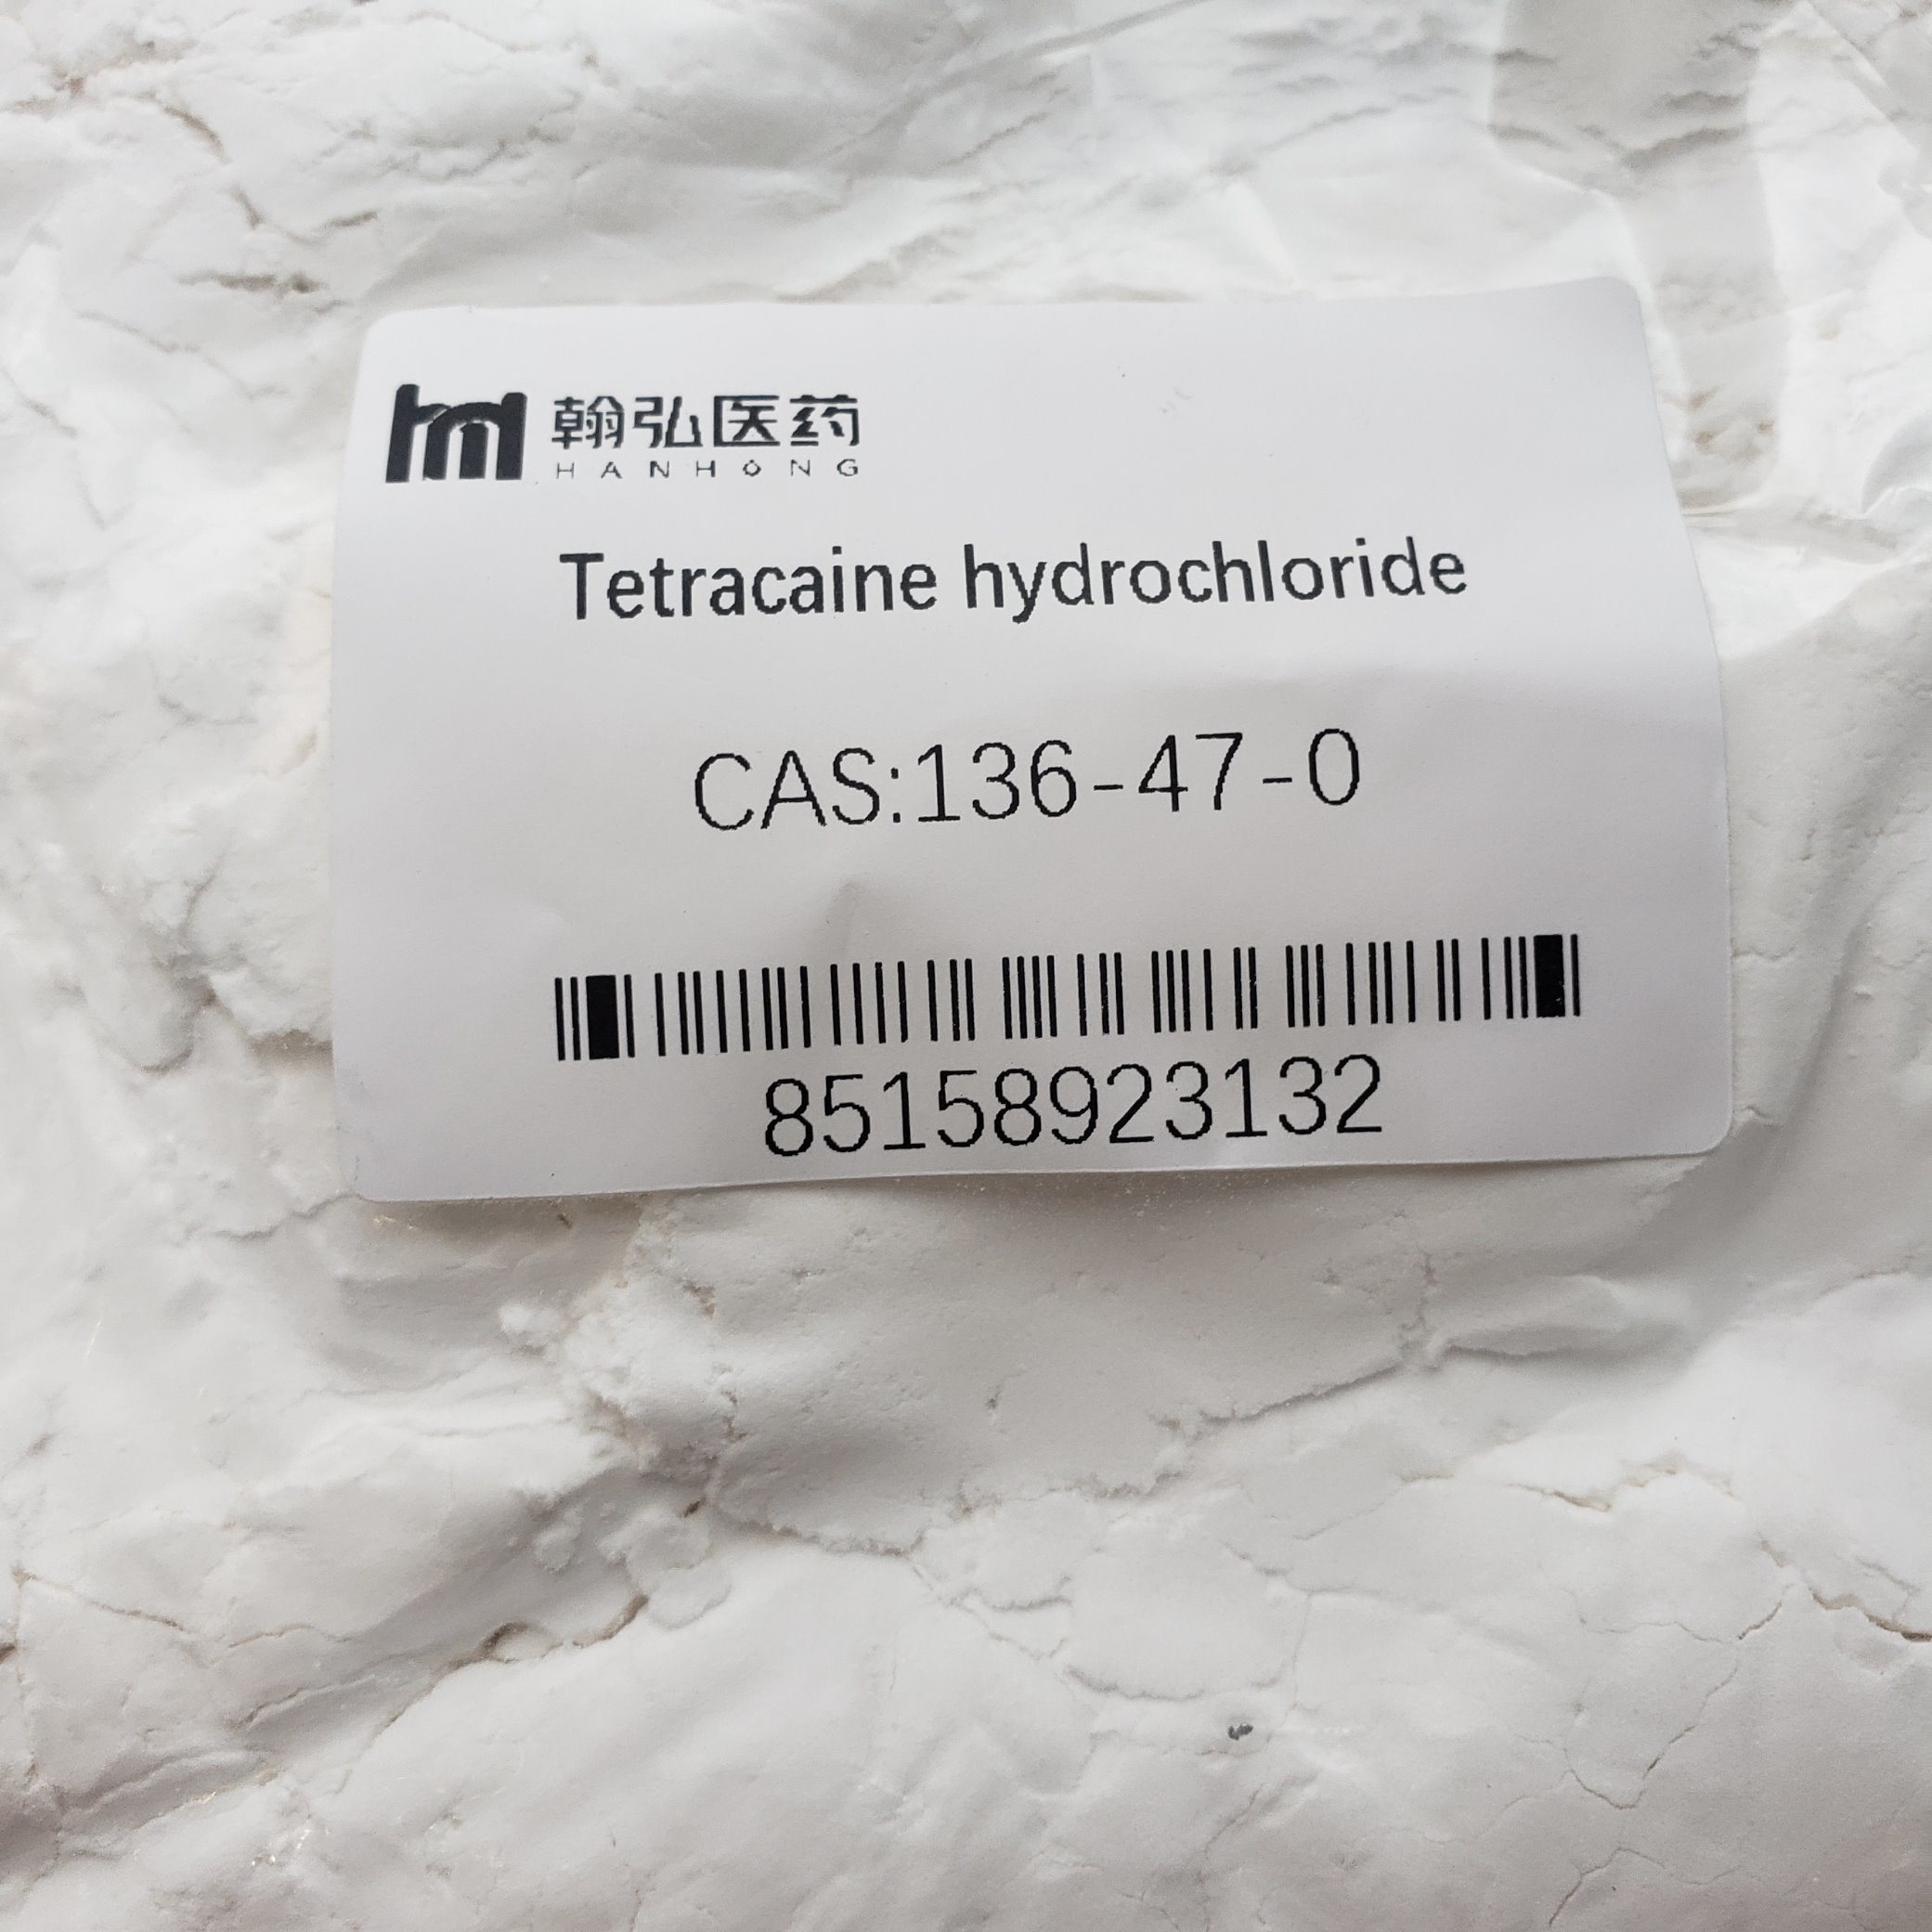 Tetracaine Hydrochloride /Tetracaine HCL CAS 136-47-0 Whatsapp: + 86 15972120223